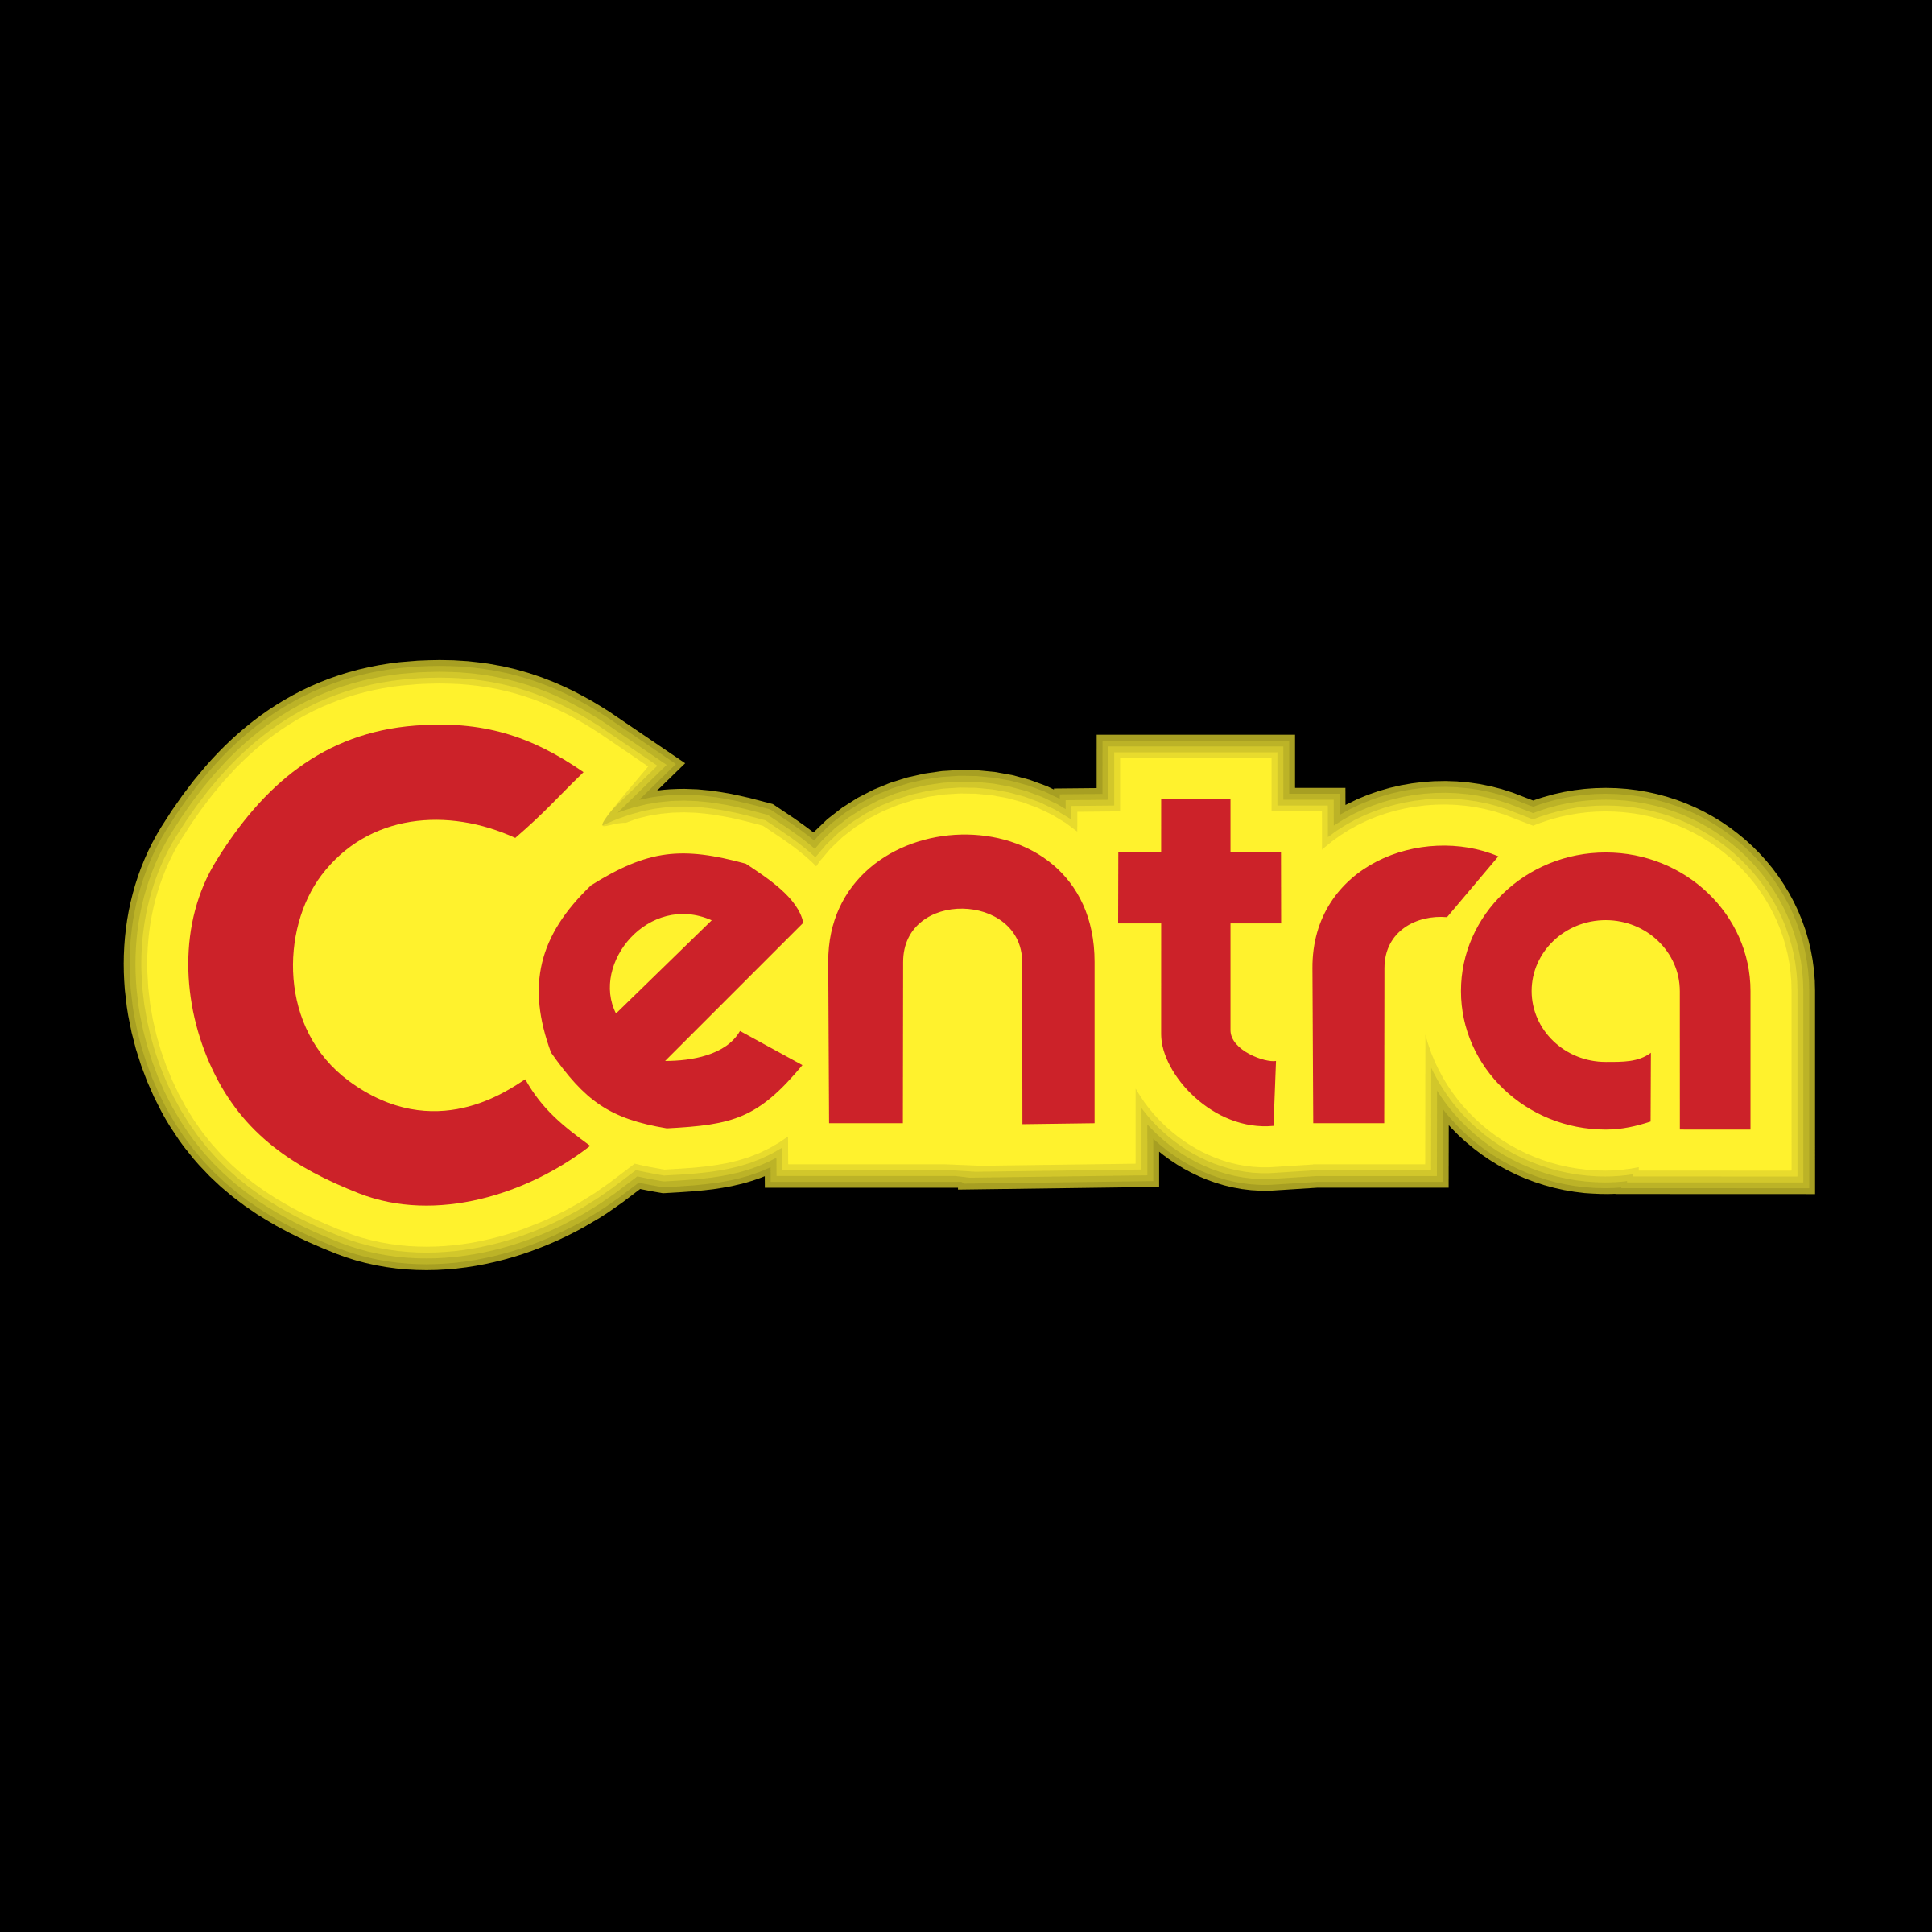 Centra Logo - Centra Logo PNG Transparent & SVG Vector - Freebie Supply